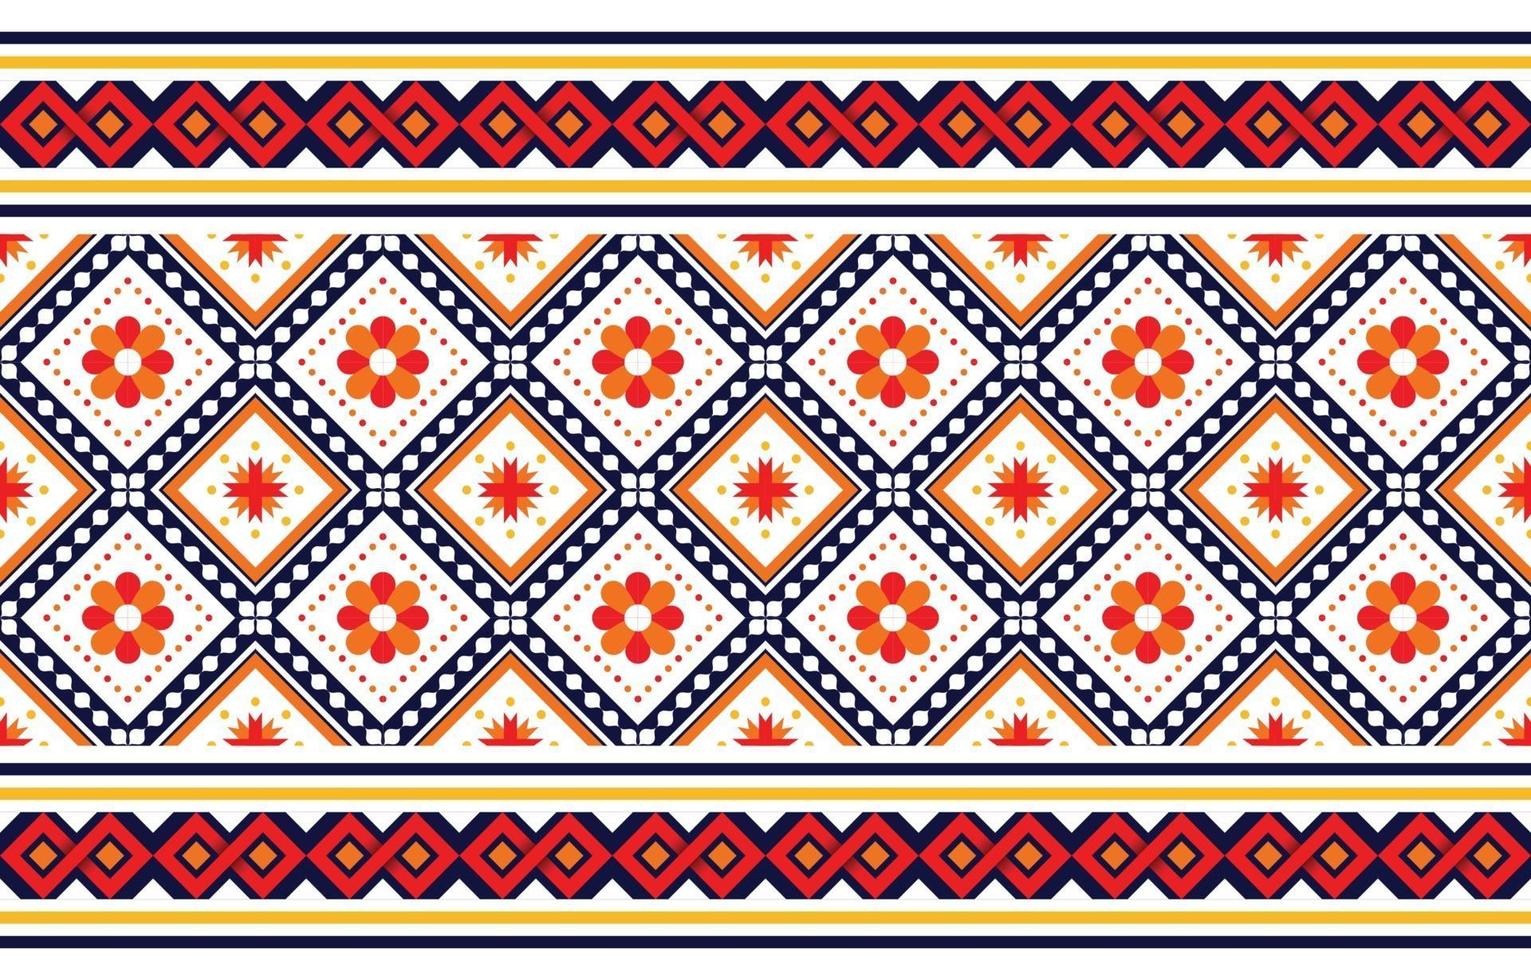 motif boho ethnique avec des fleurs aux couleurs vives. conception pour tapis, papier peint, vêtements, emballage, batik, tissu, style de broderie illustration vectorielle dans des thèmes ethniques. vecteur